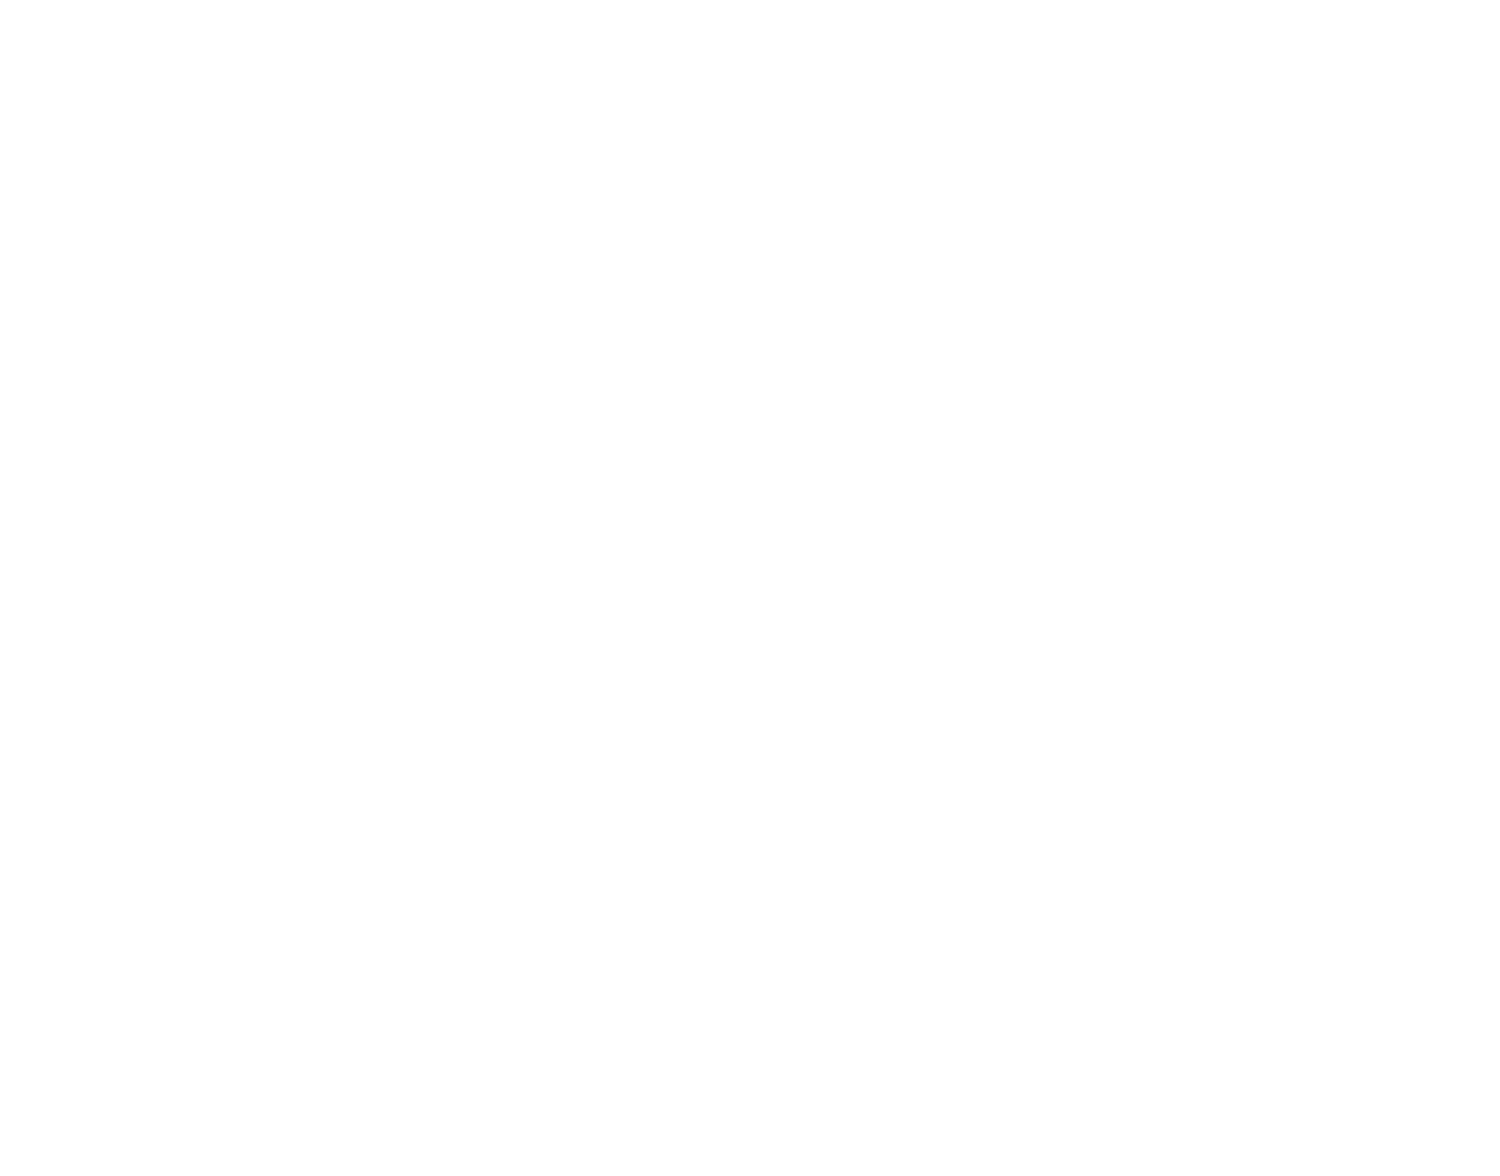 Karina Cooks